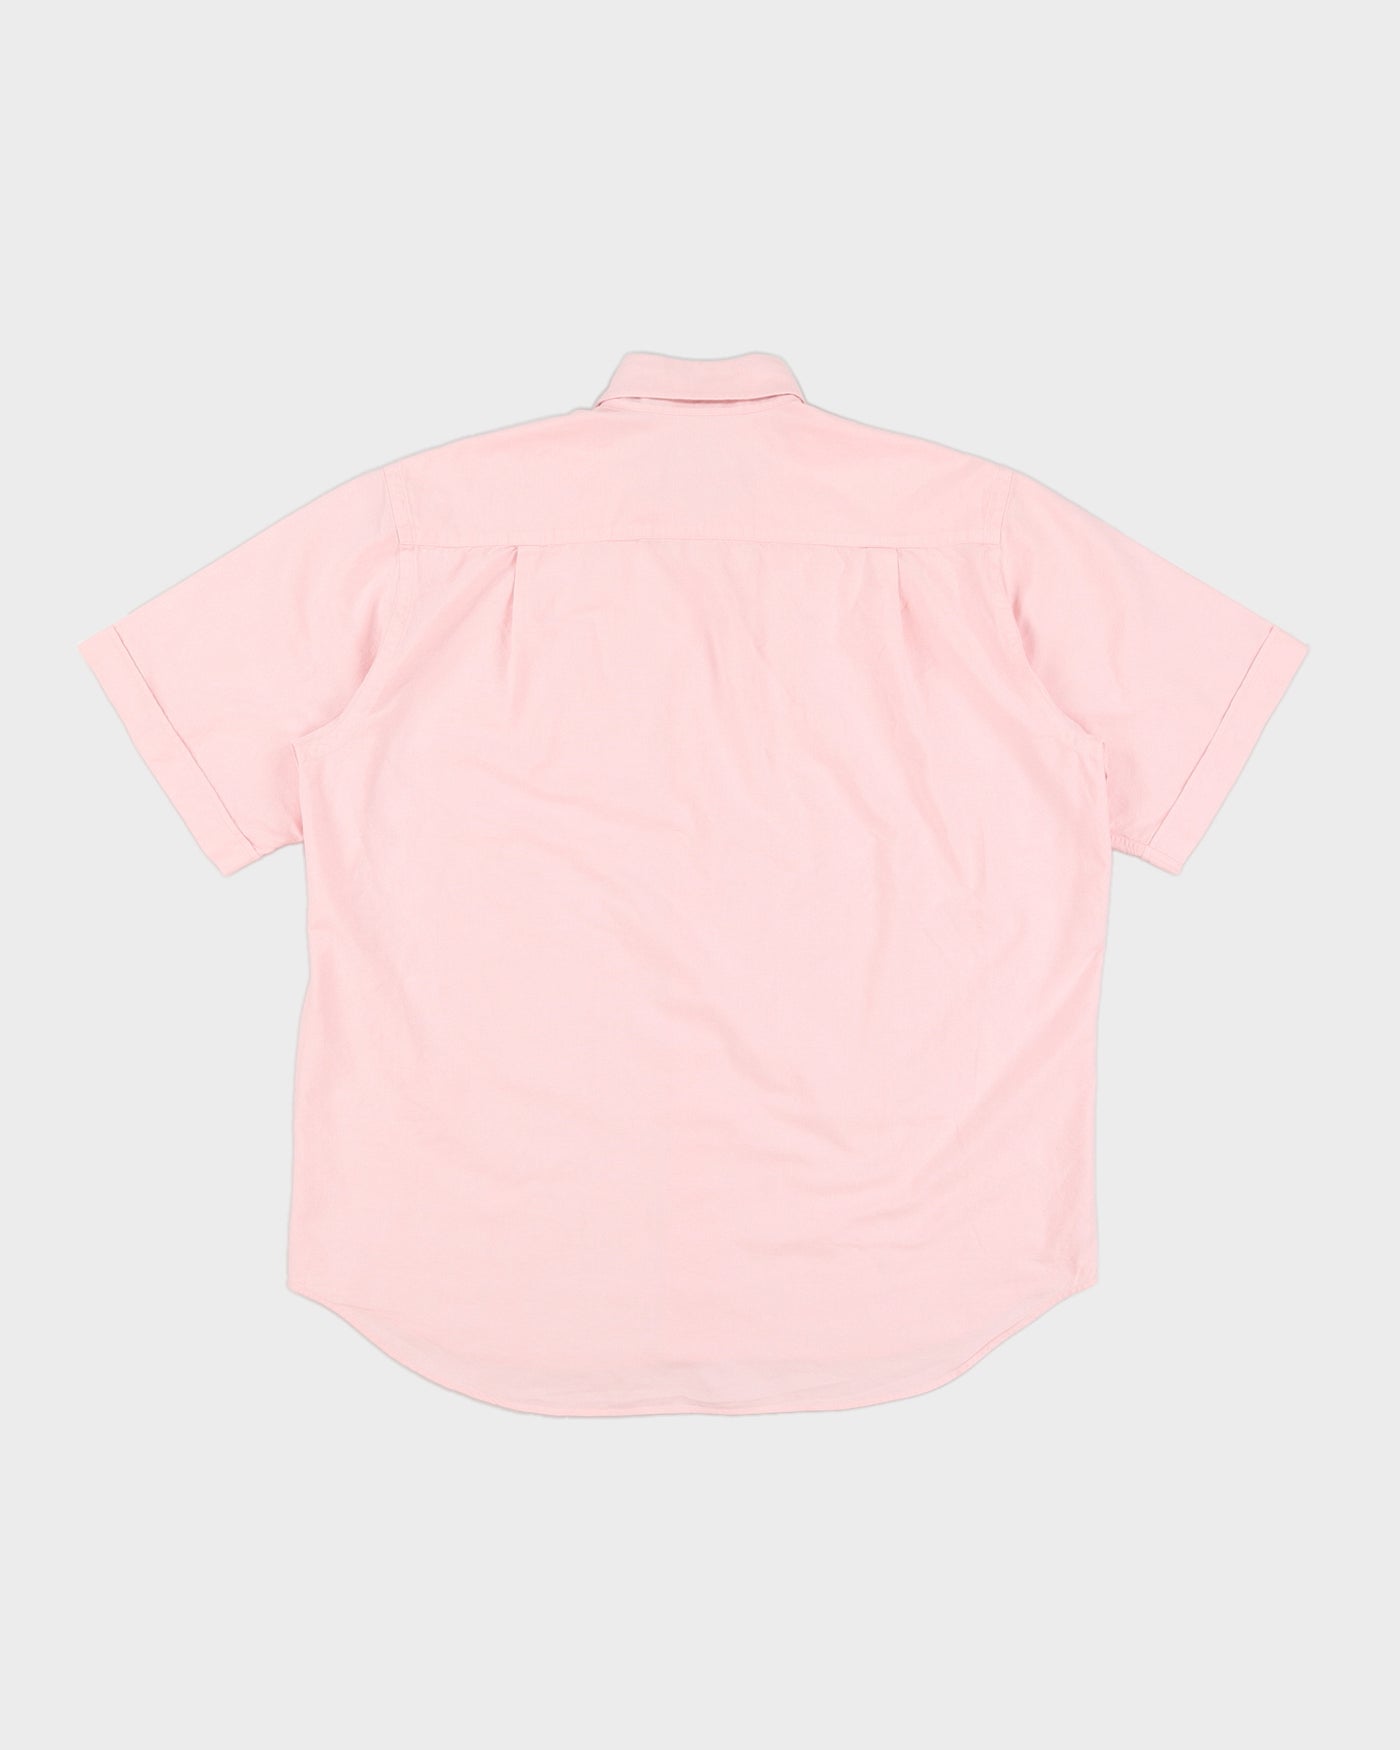 Burberry Pink Cotton Dress Shirt - 2XL